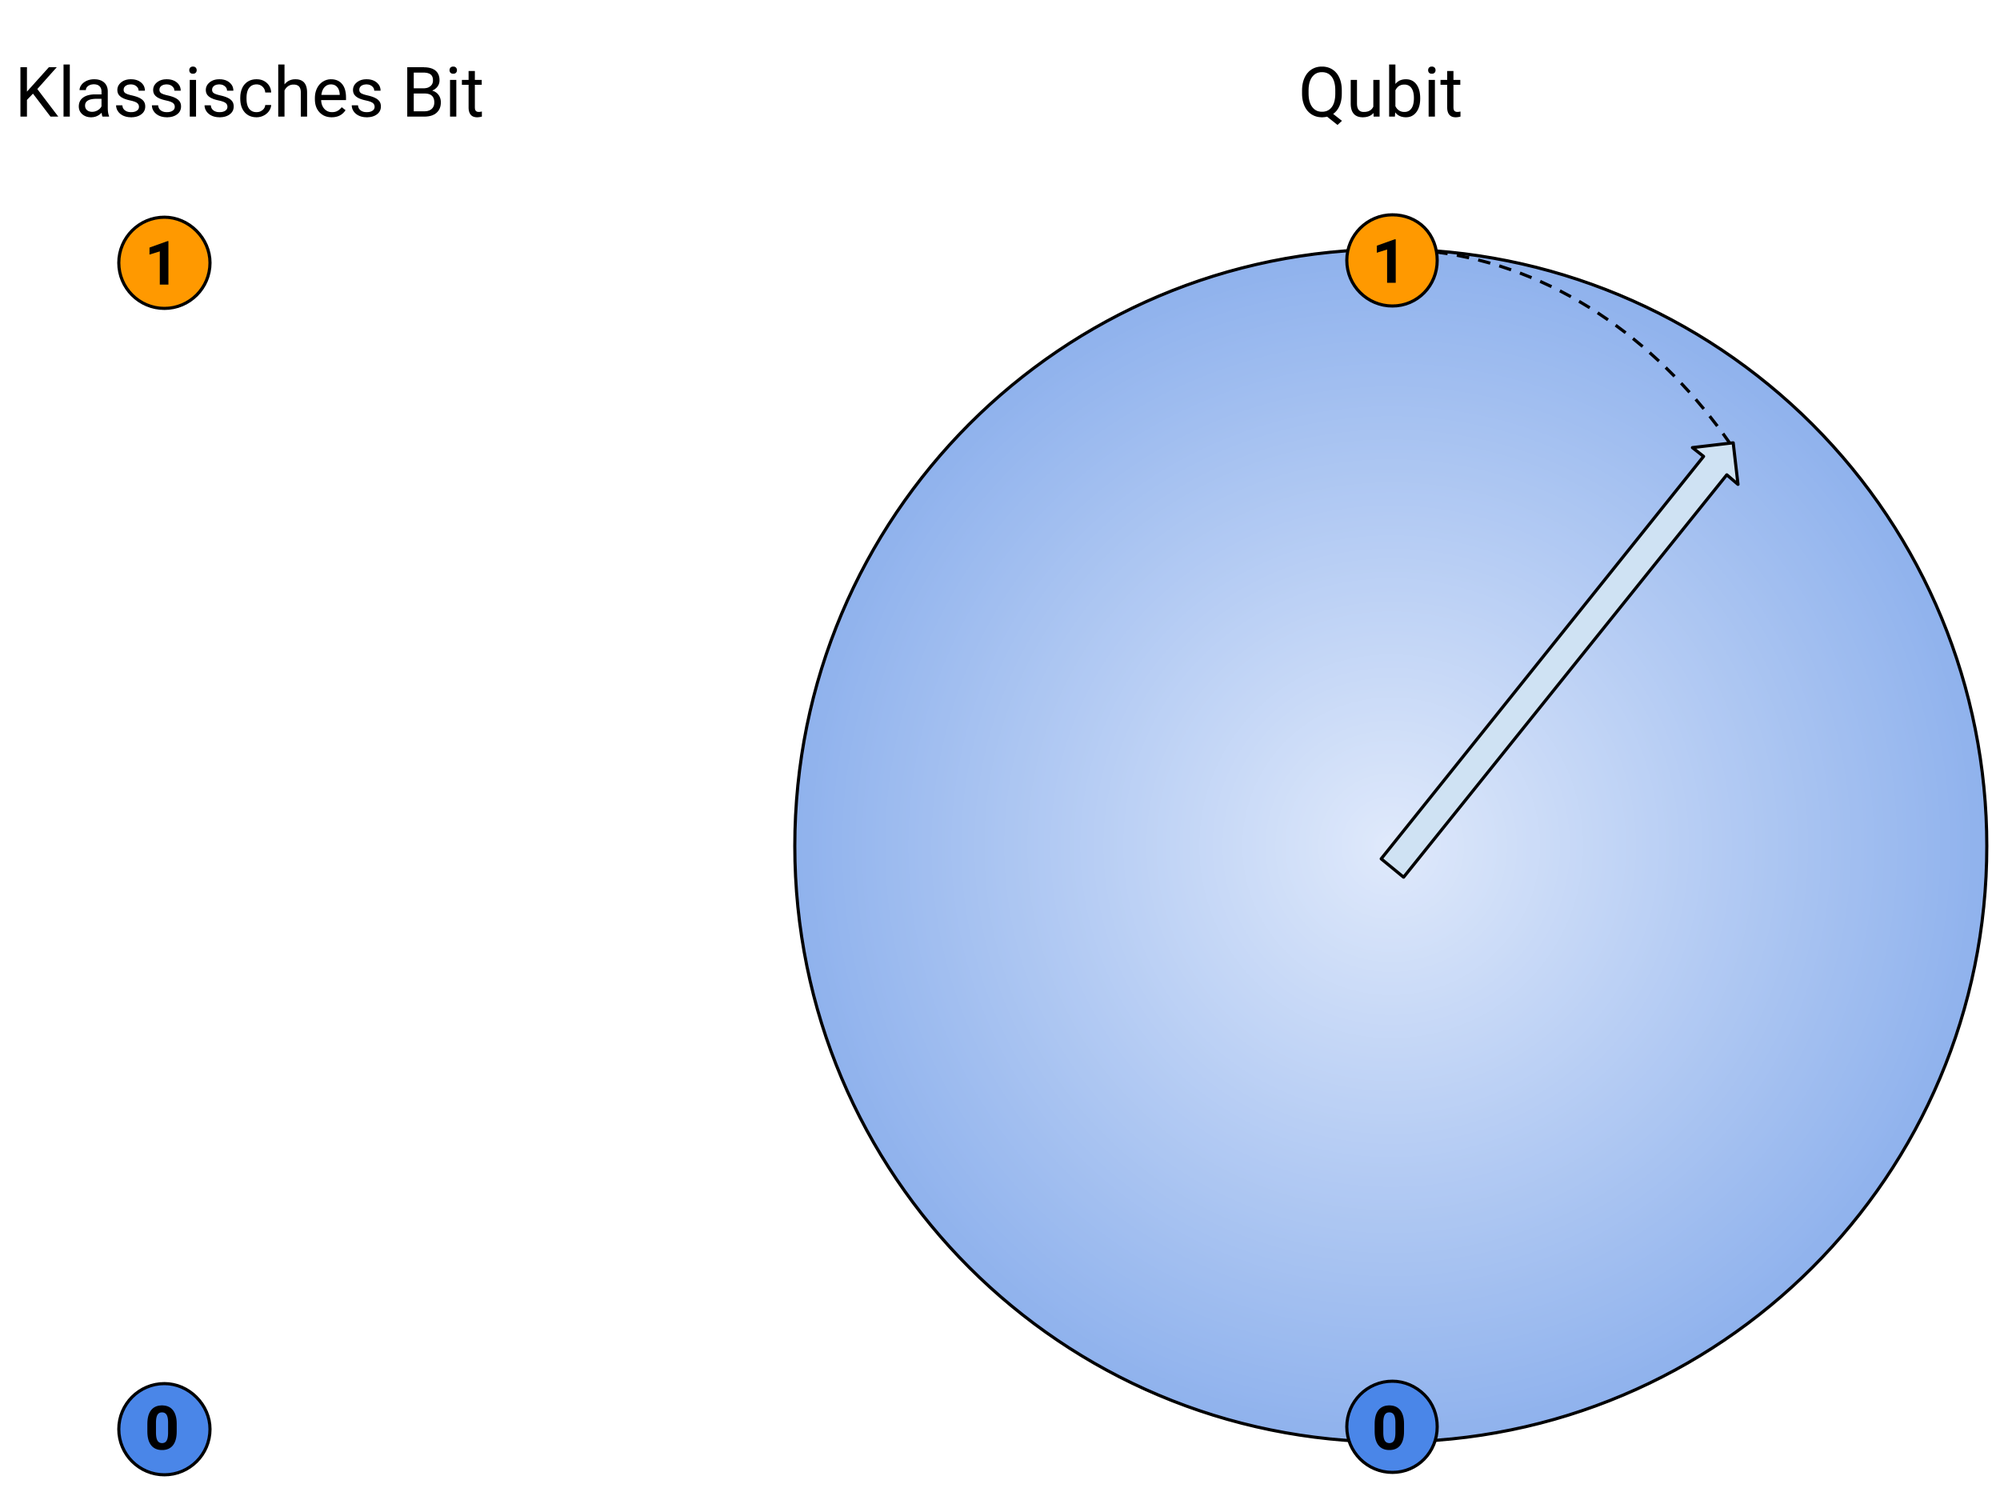 Darstellung eines digitalen Bit und eines Qubit auf der Blochsphäre